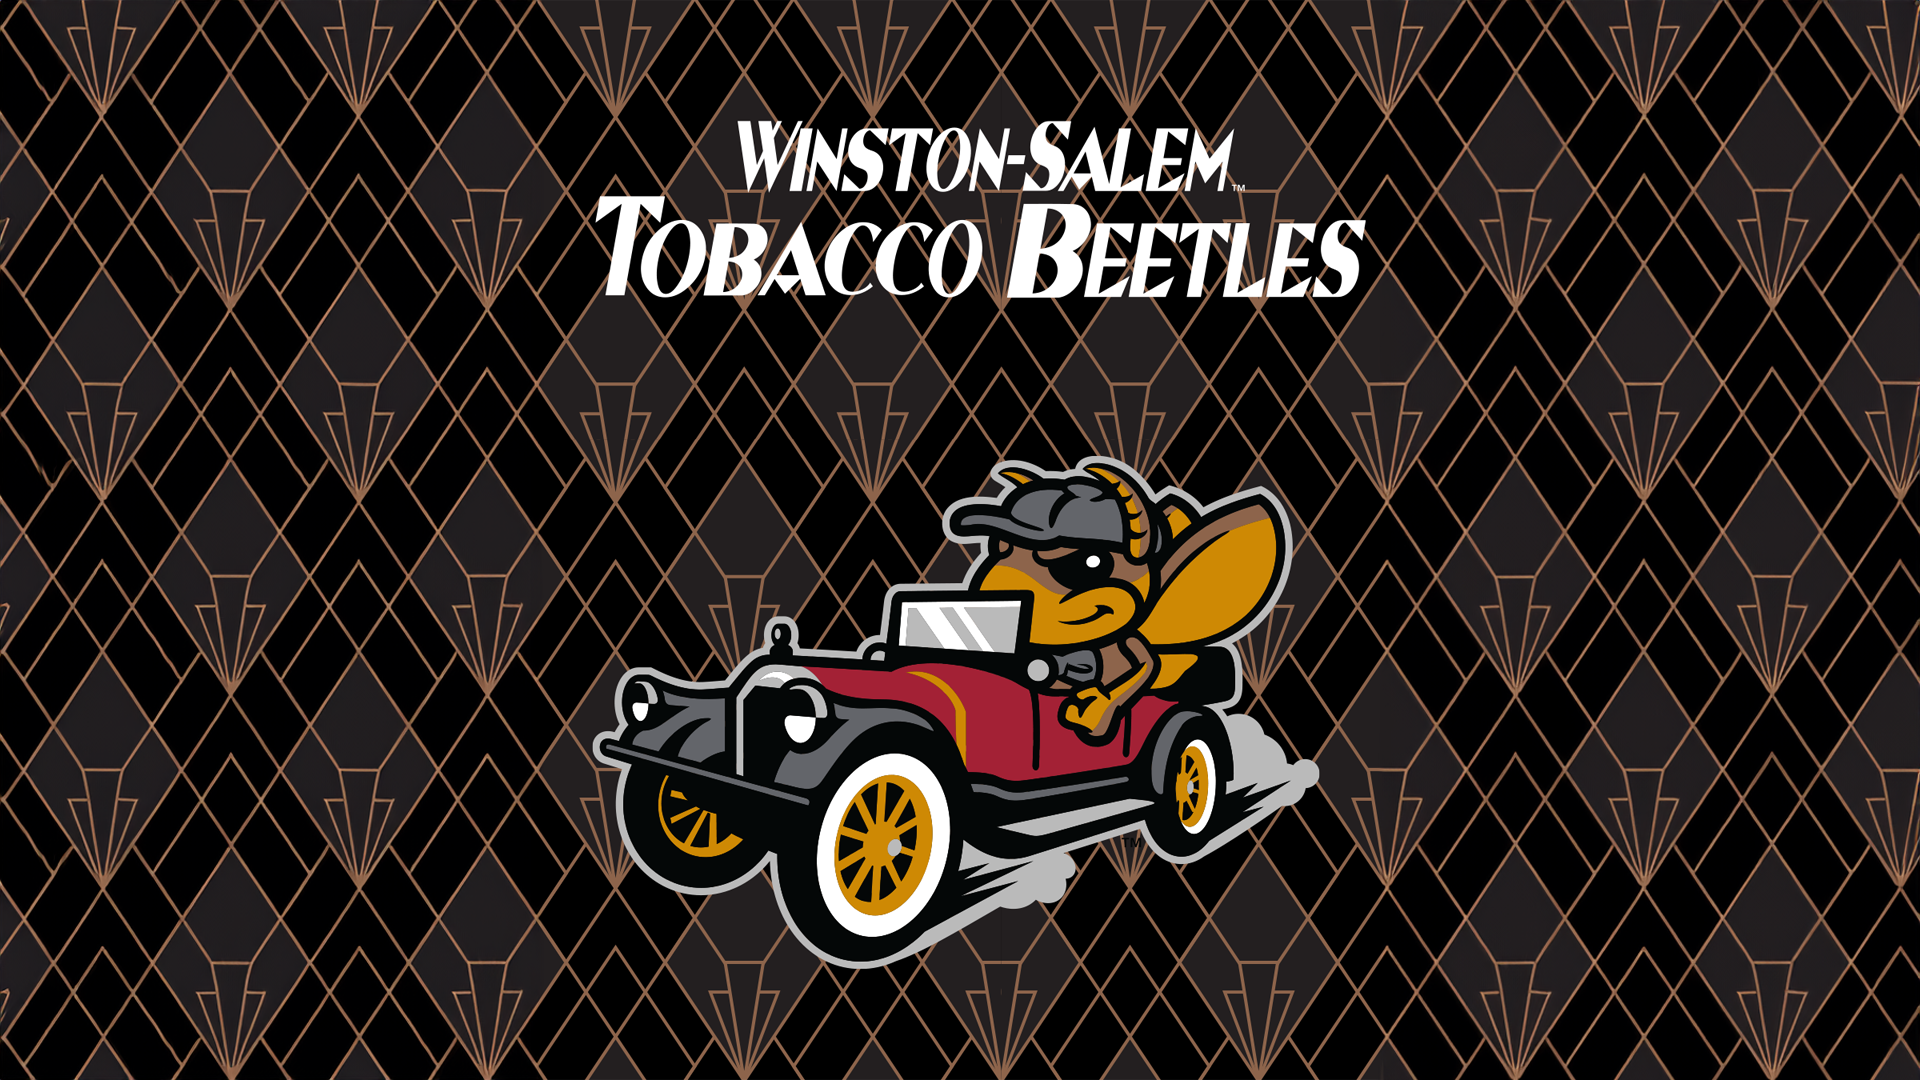 Meet the Tobacco Beetles